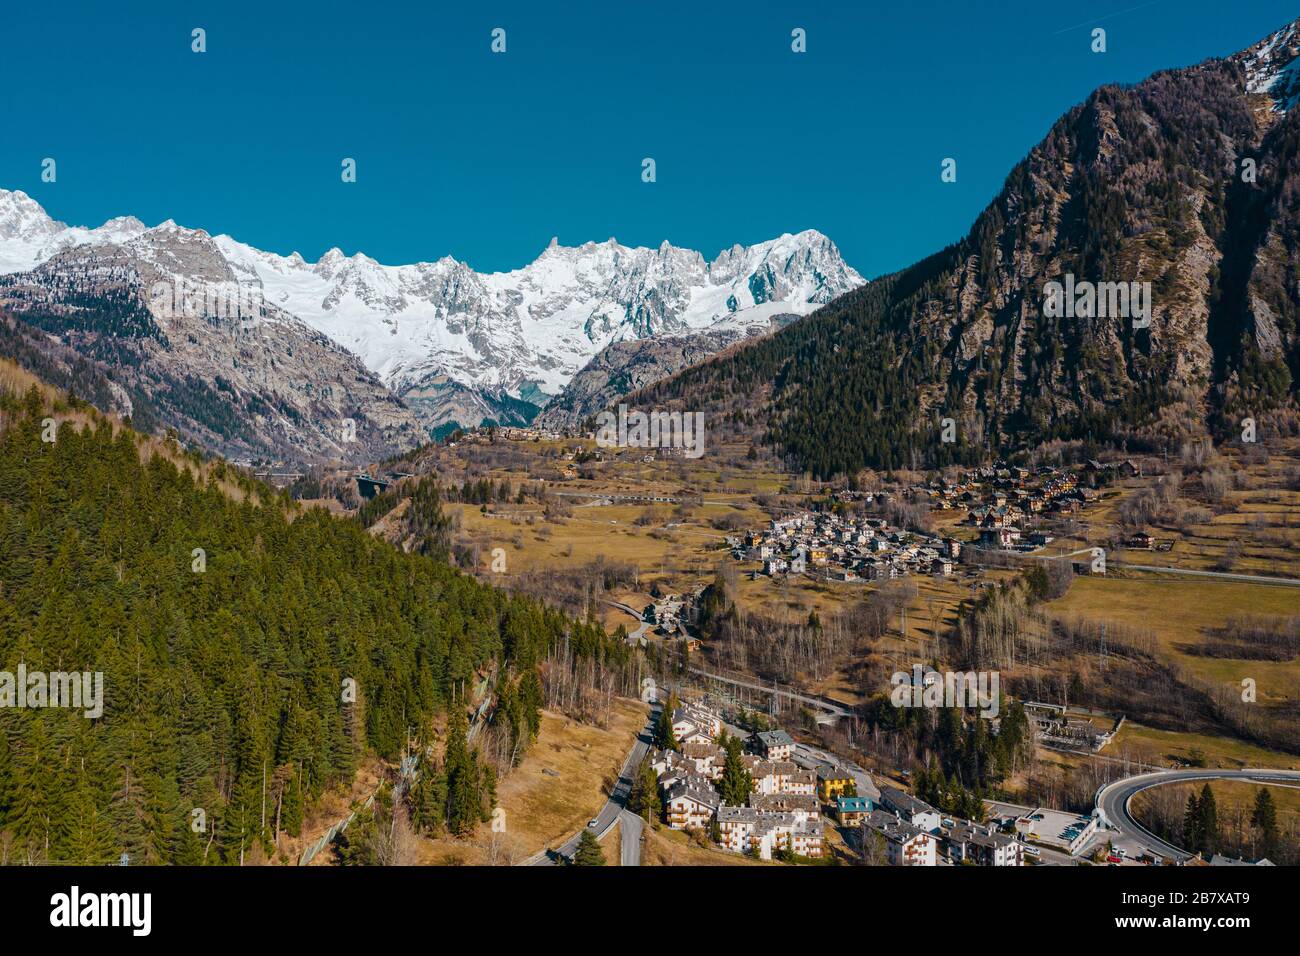 Il villaggio Palleusieux sotto una grande montagna, nel bacino Pre-Saint-Didier, Valle d'Aosta al tempo dell'epidemia del virus corona, nel nord Italia Foto Stock